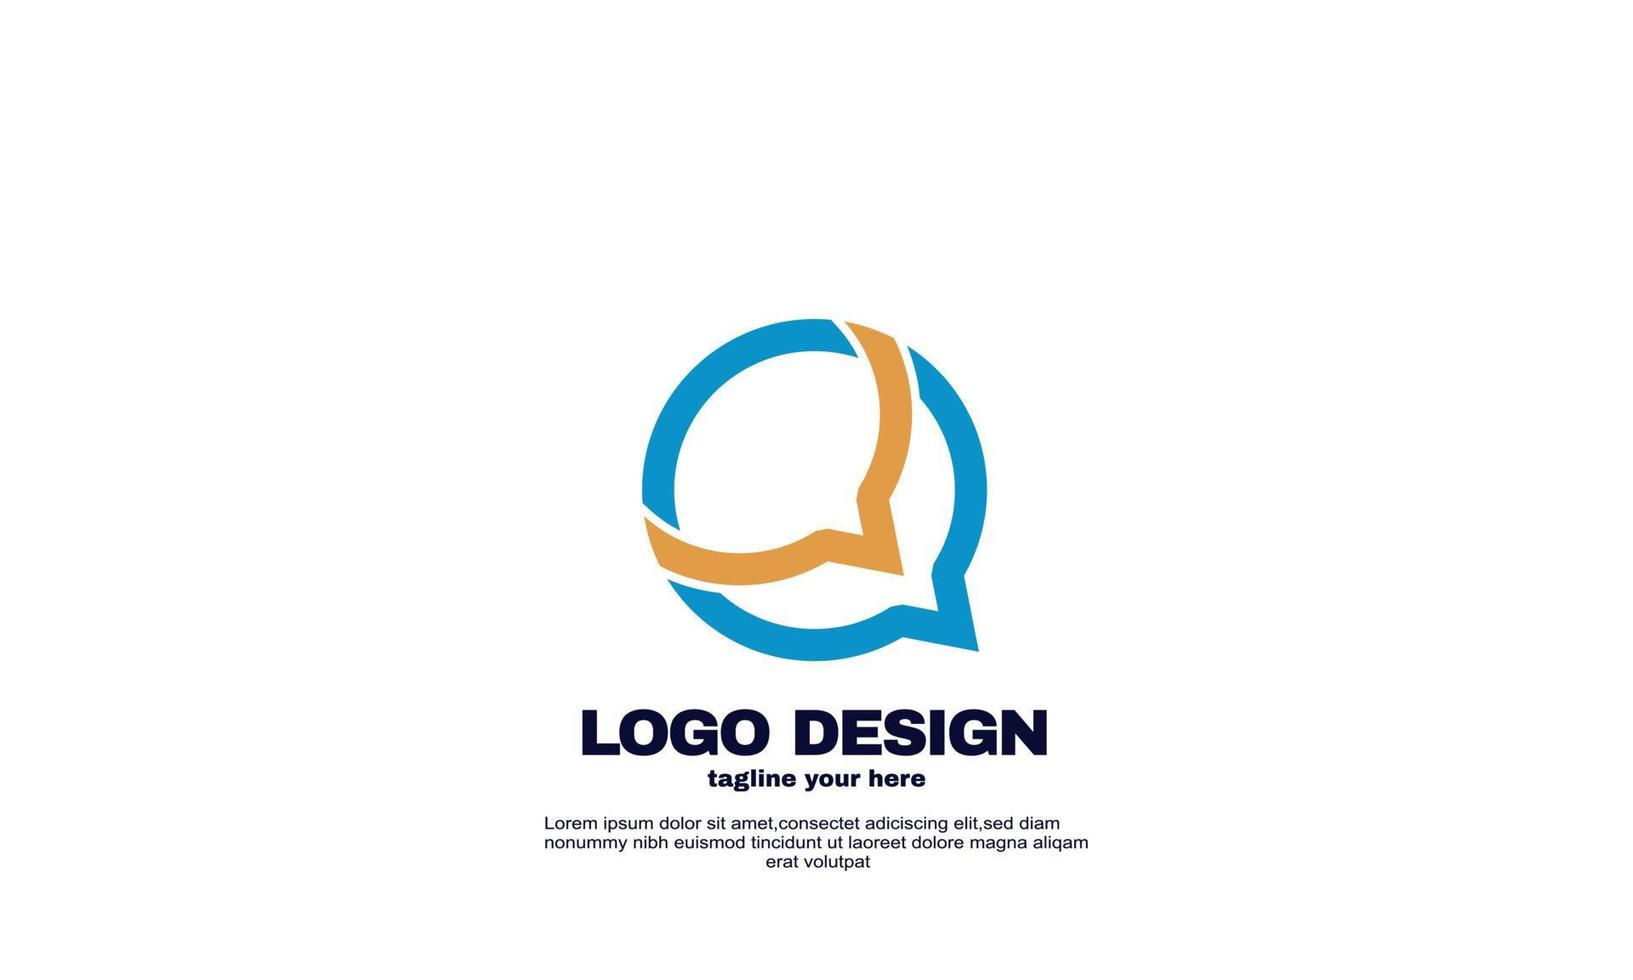 modelo de design de logotipo de aplicativo de bate-papo social vetor abstrato